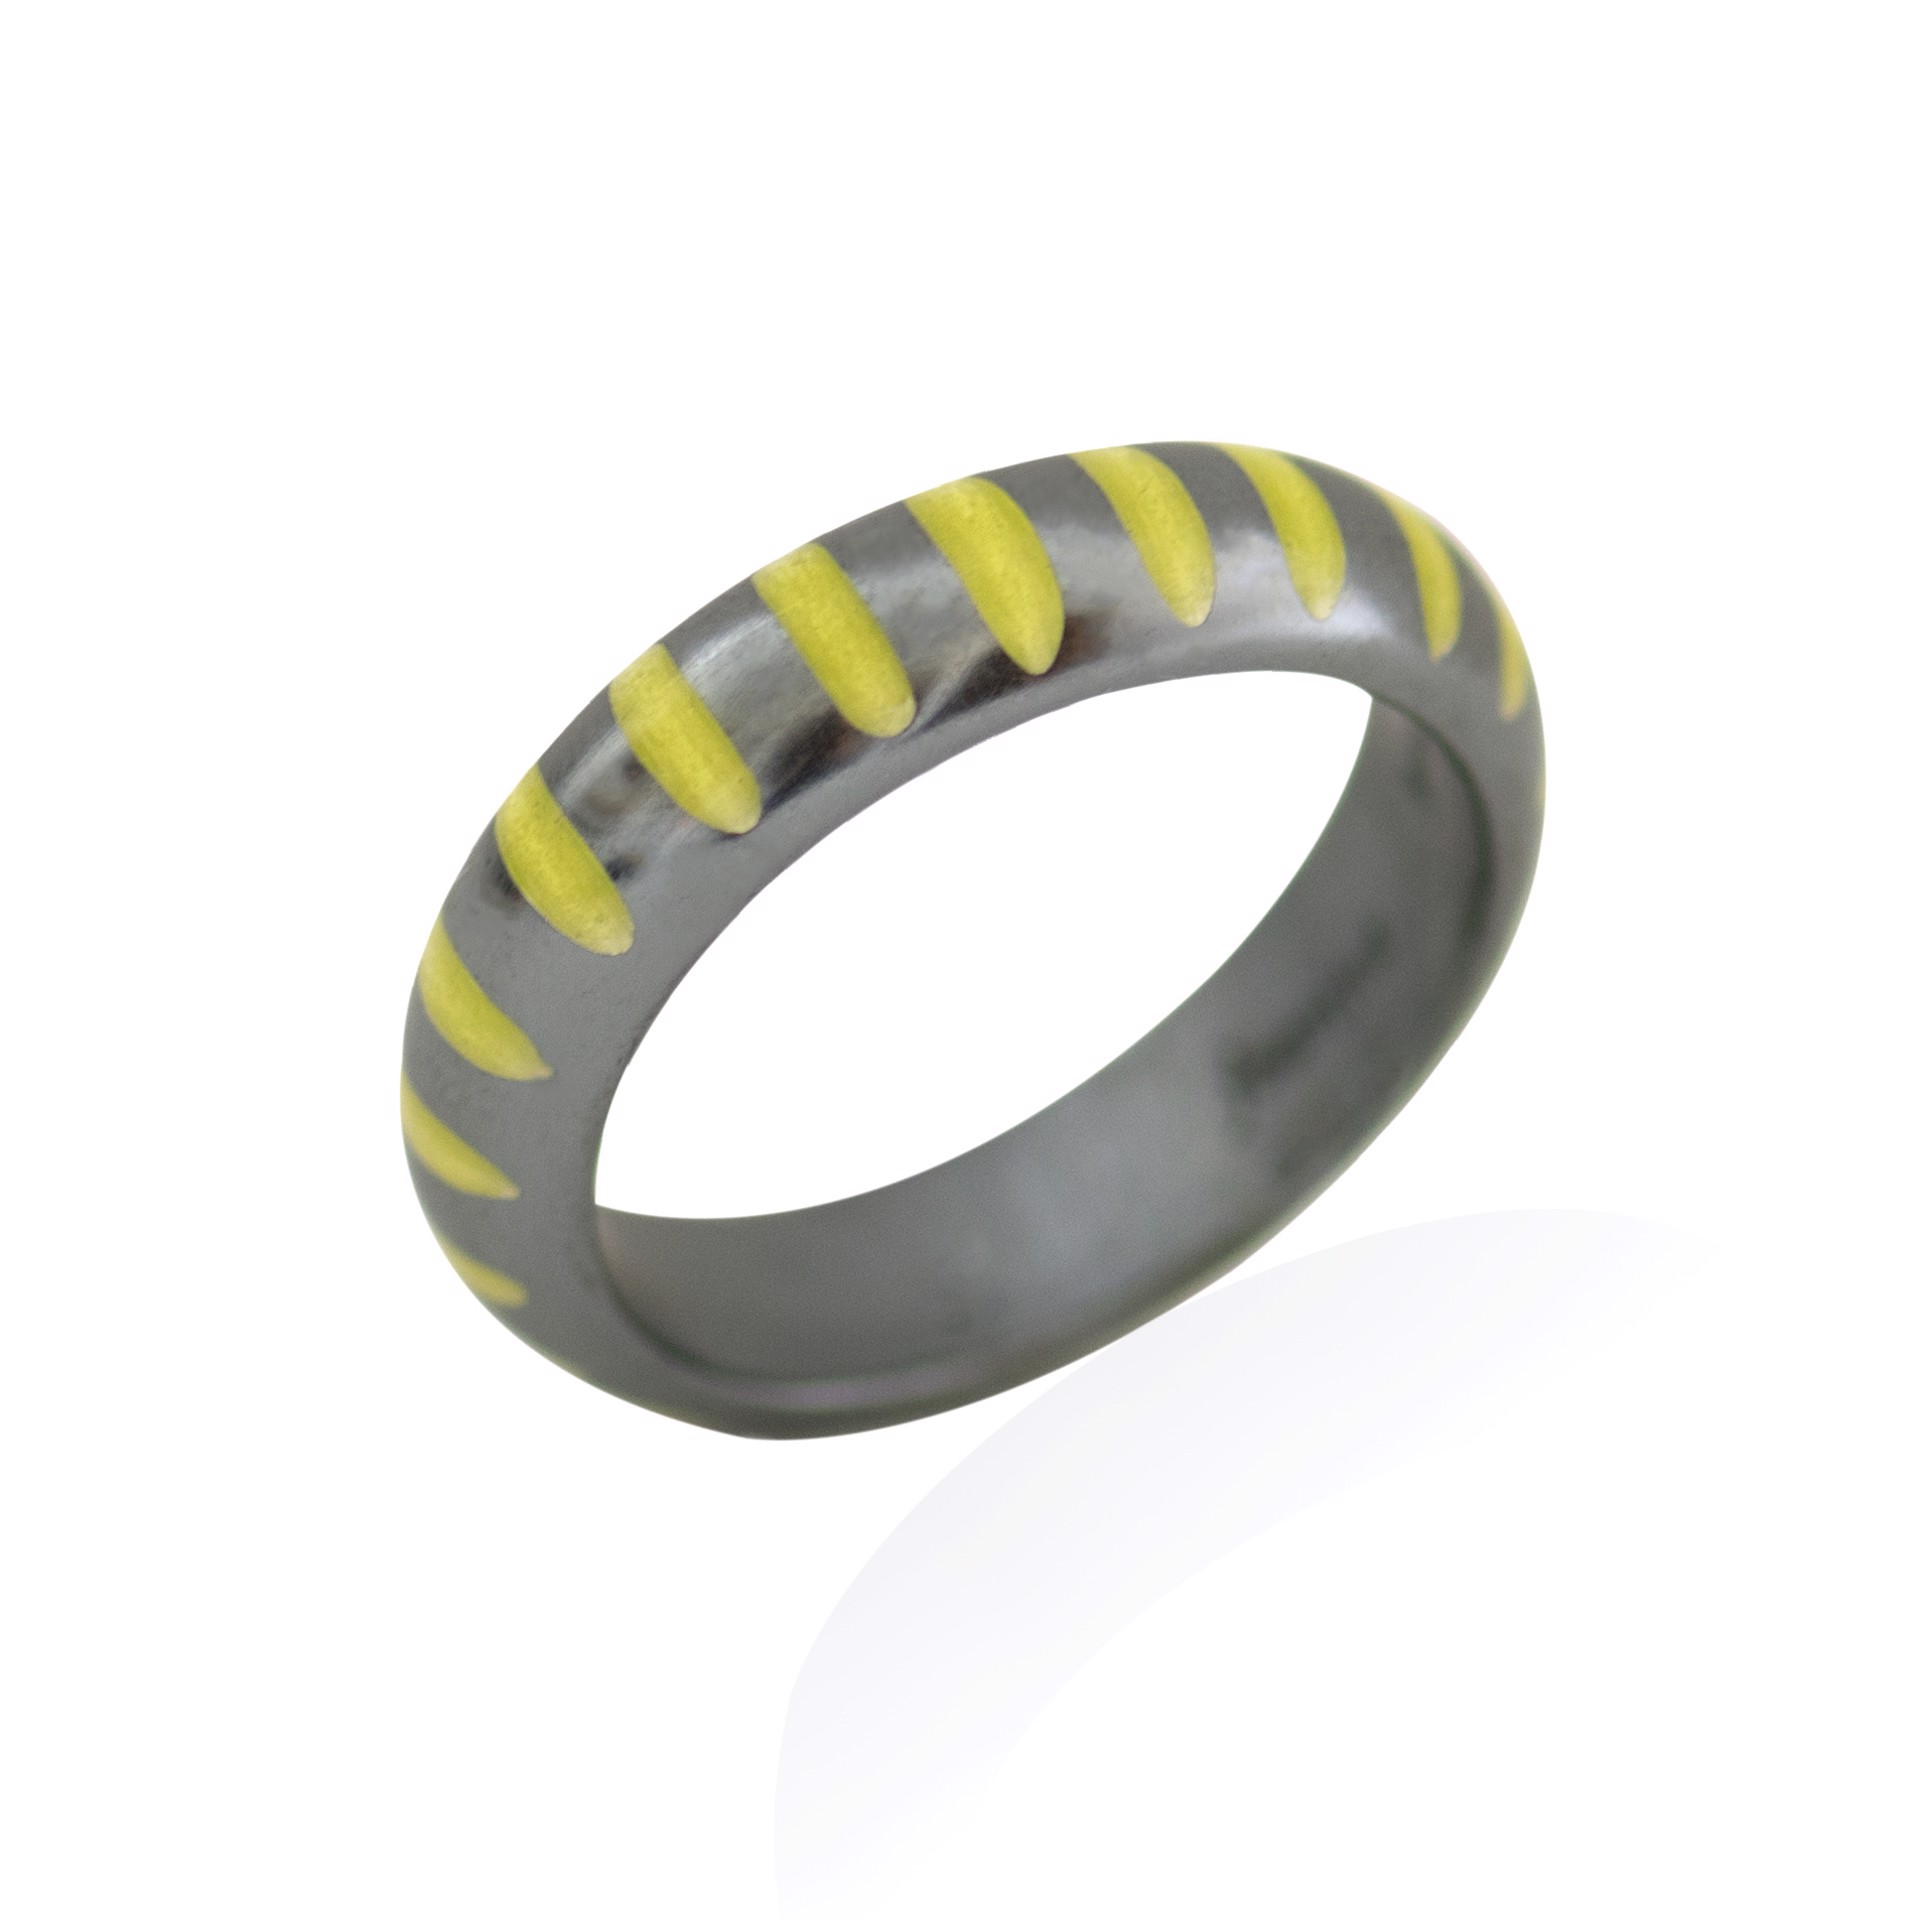 Vertical Stripe Enamel Ring (size 6) by Joanna Nealey